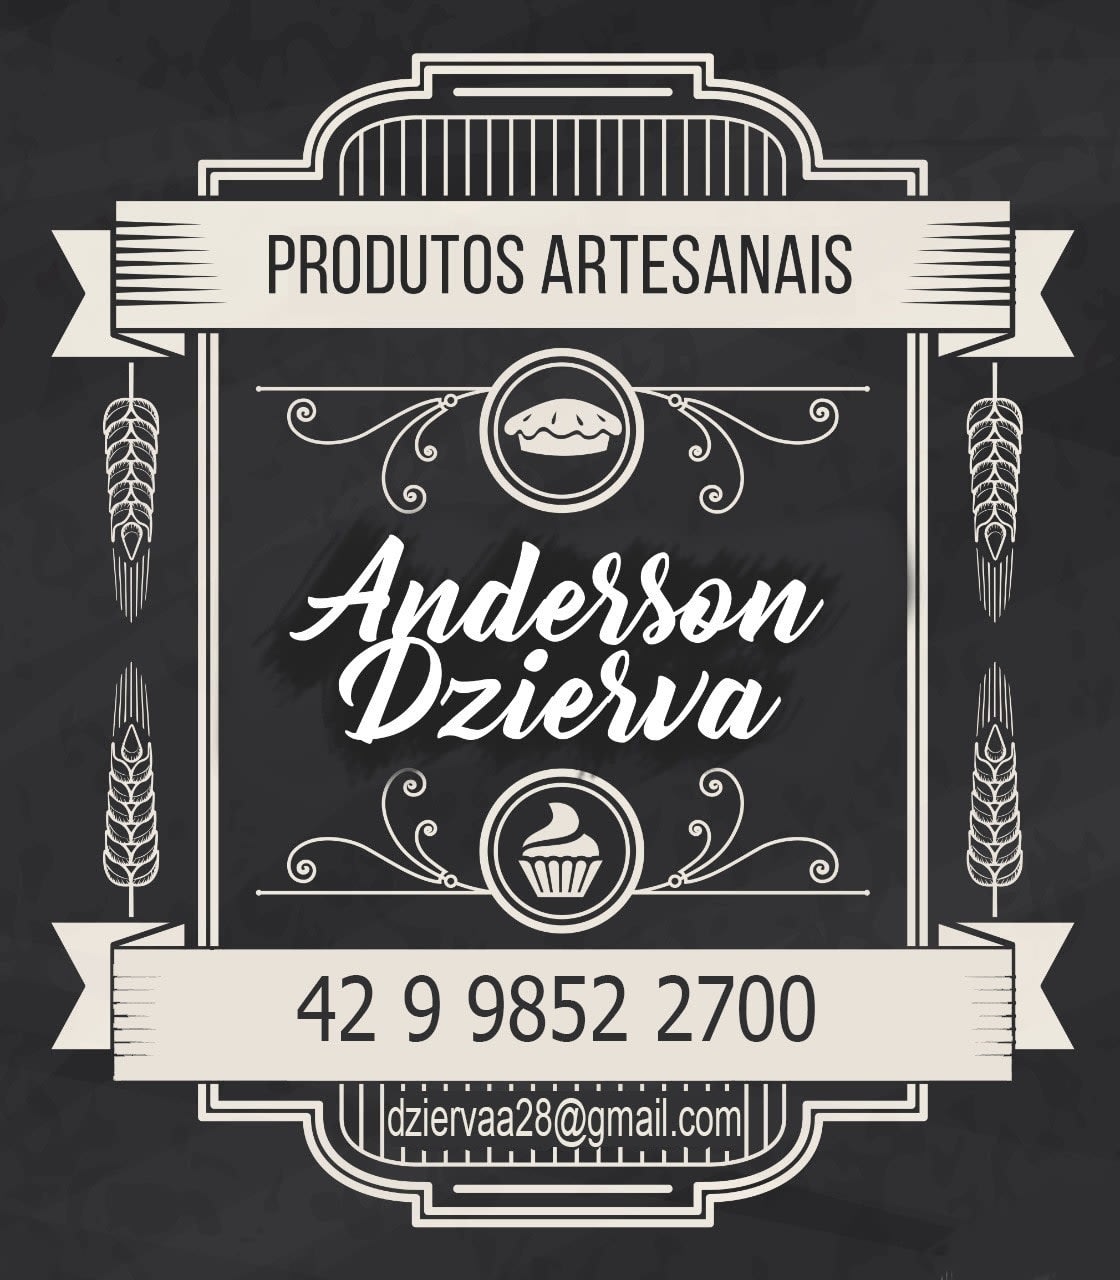 Anderson Produtos Artesanais